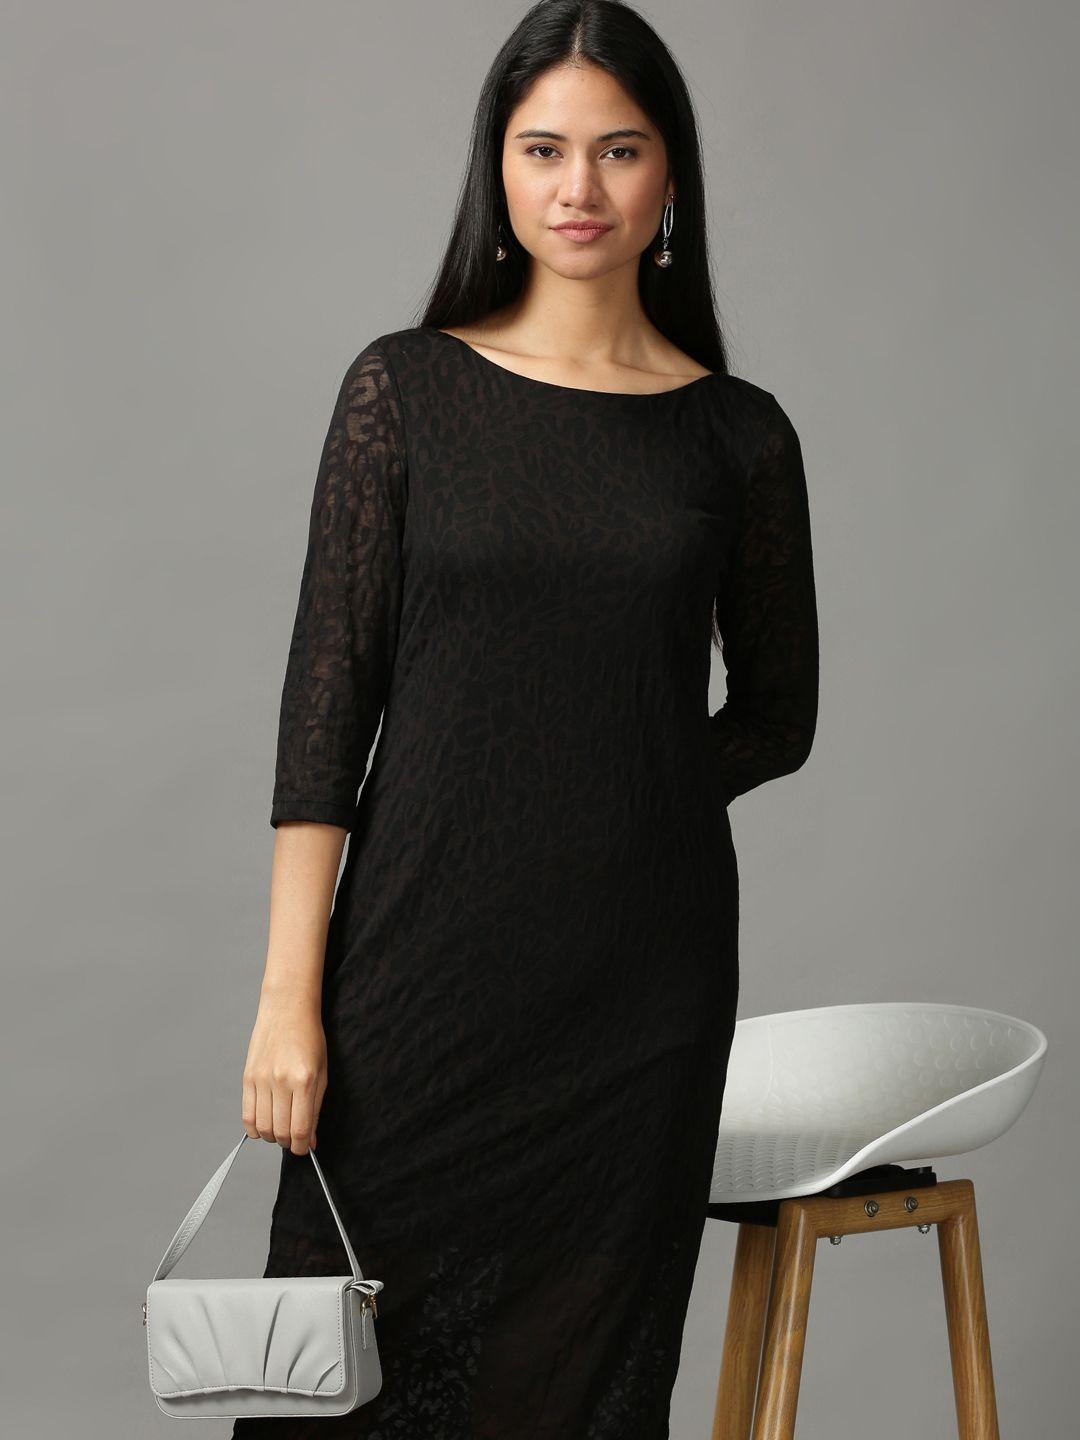 showoff black lace sheath dress